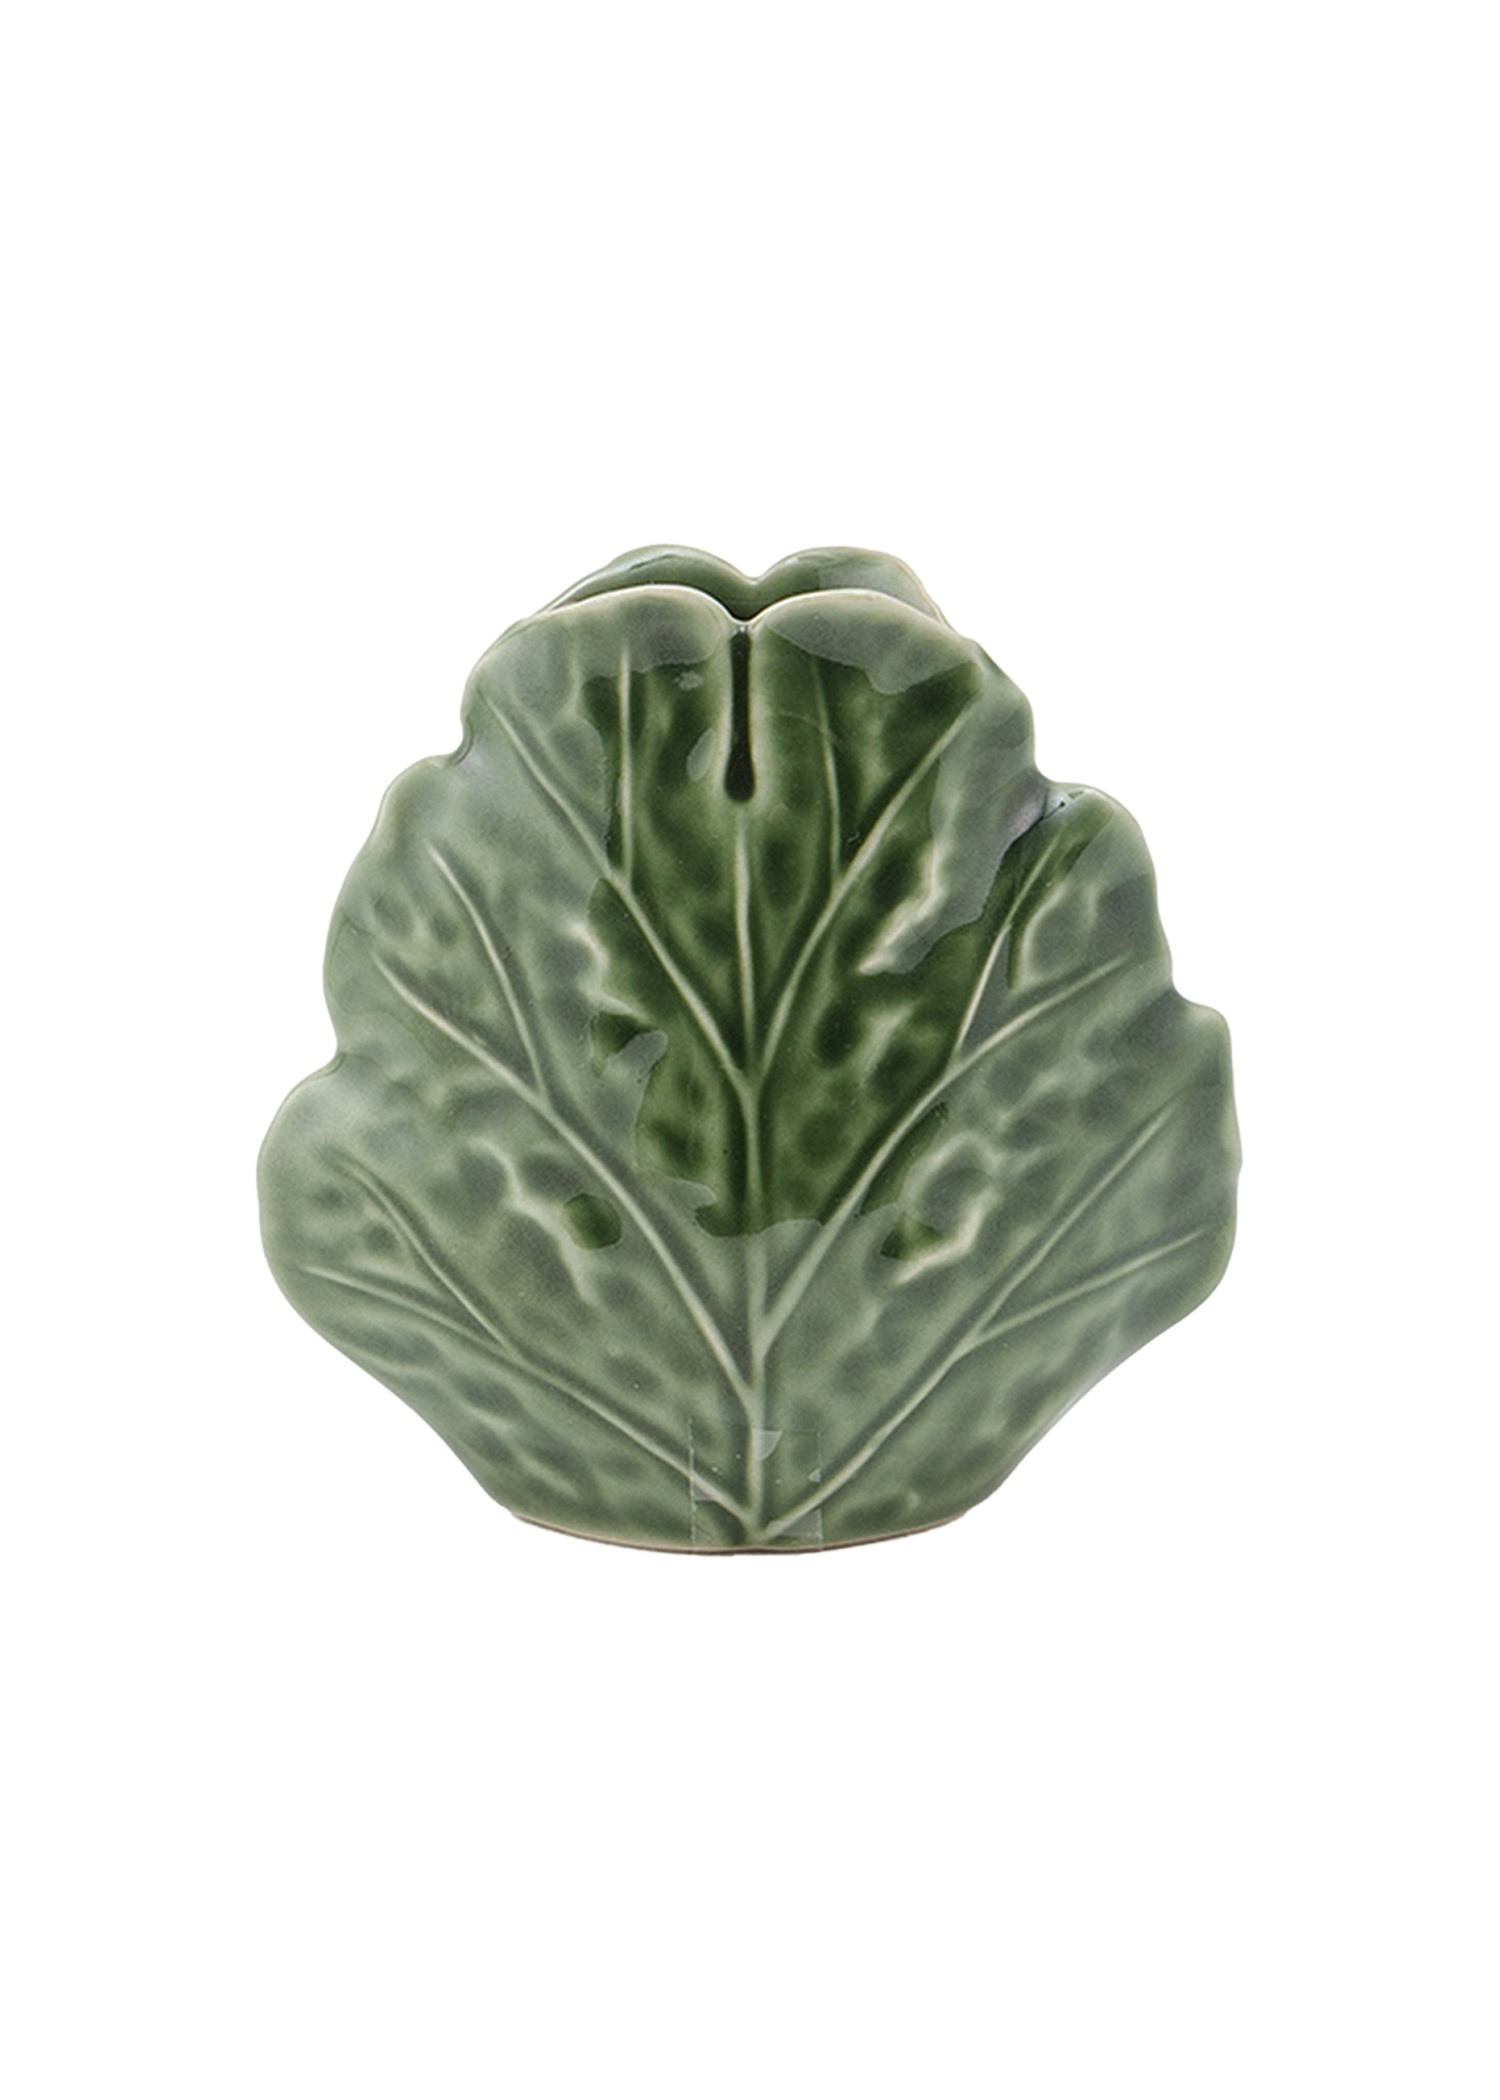 Small stoneware cabbage vase Image 0